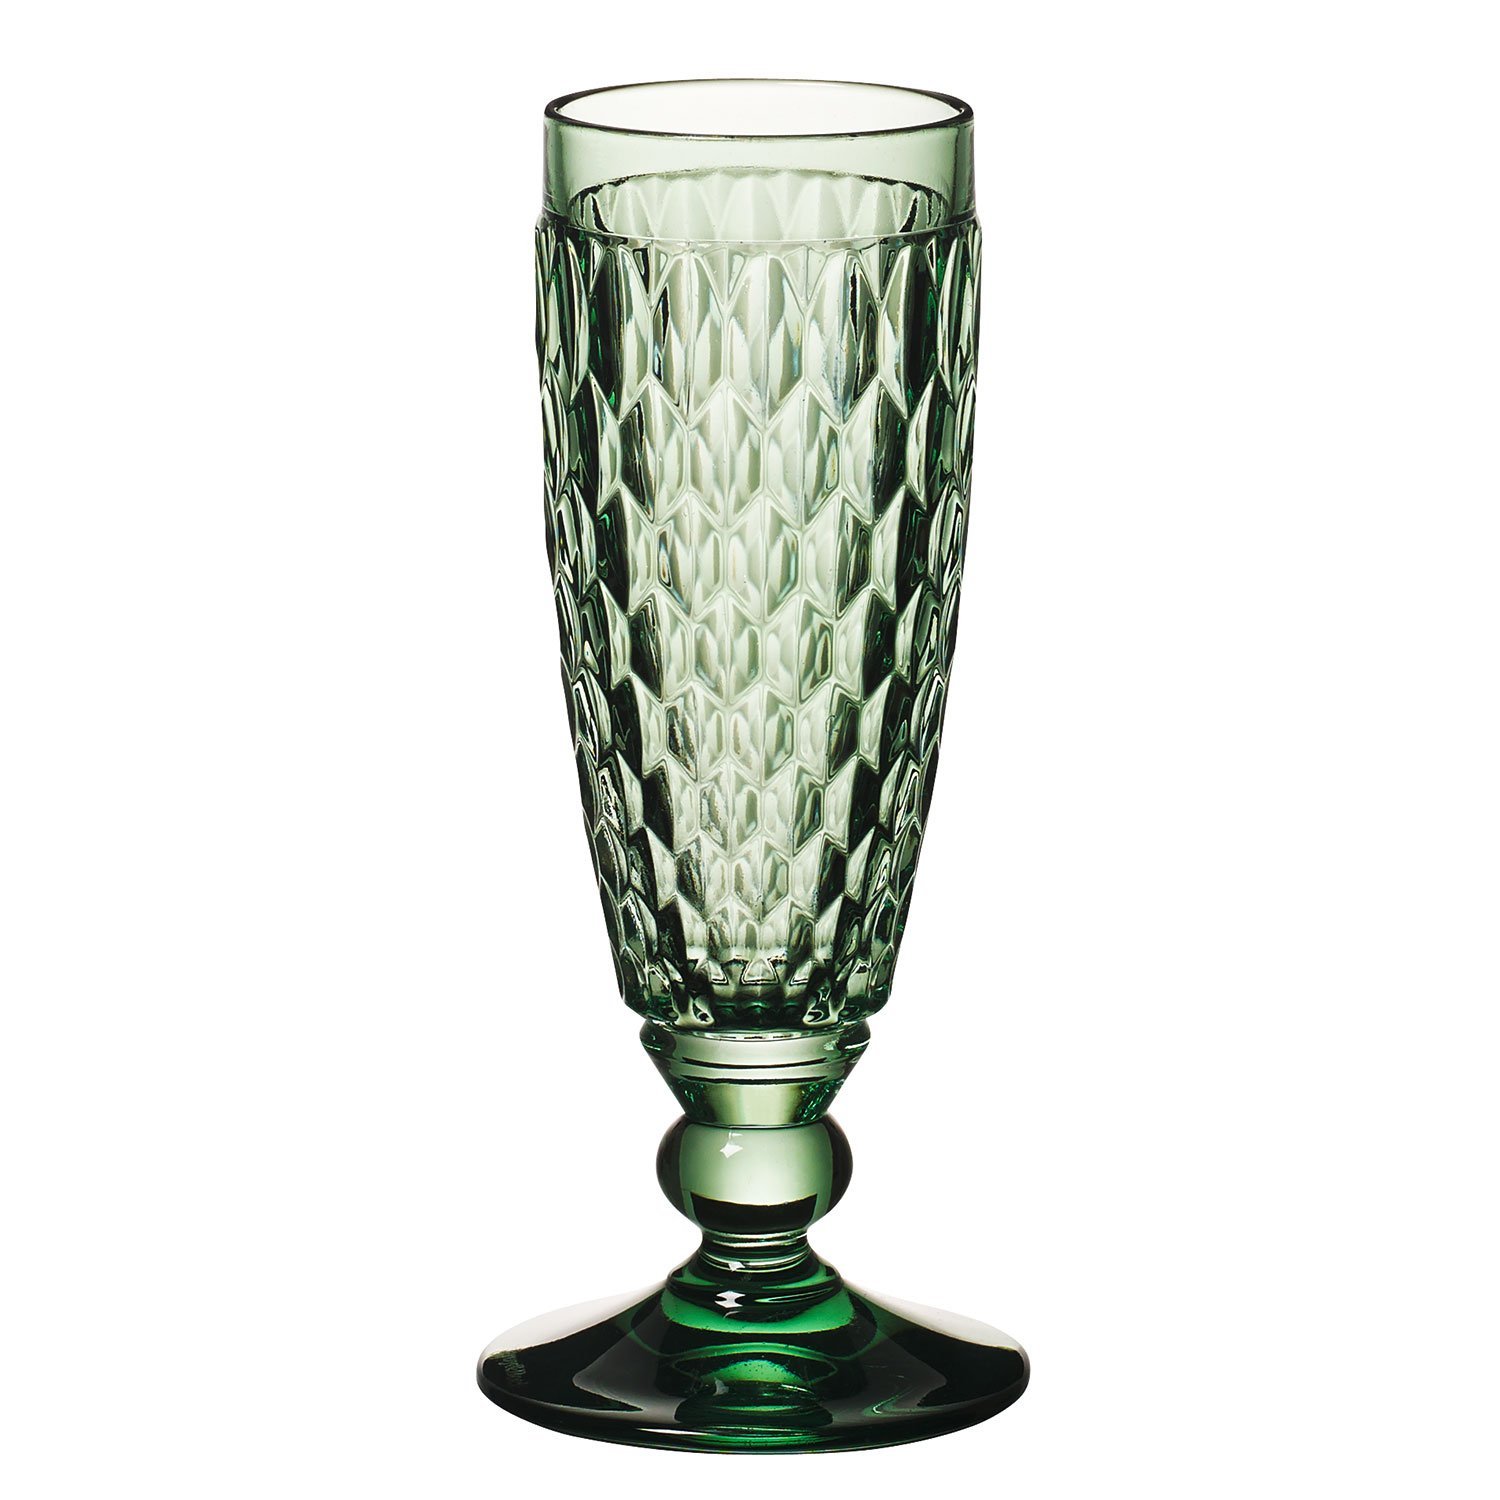 Boston Coloured Бокал для шампанского green 163 мм, объем 150 мл Villeroy & Boch
https://spb.v-b.ru
г.Санкт-Петербург
eshop@v-b.spb.ru
+7(812)3801977